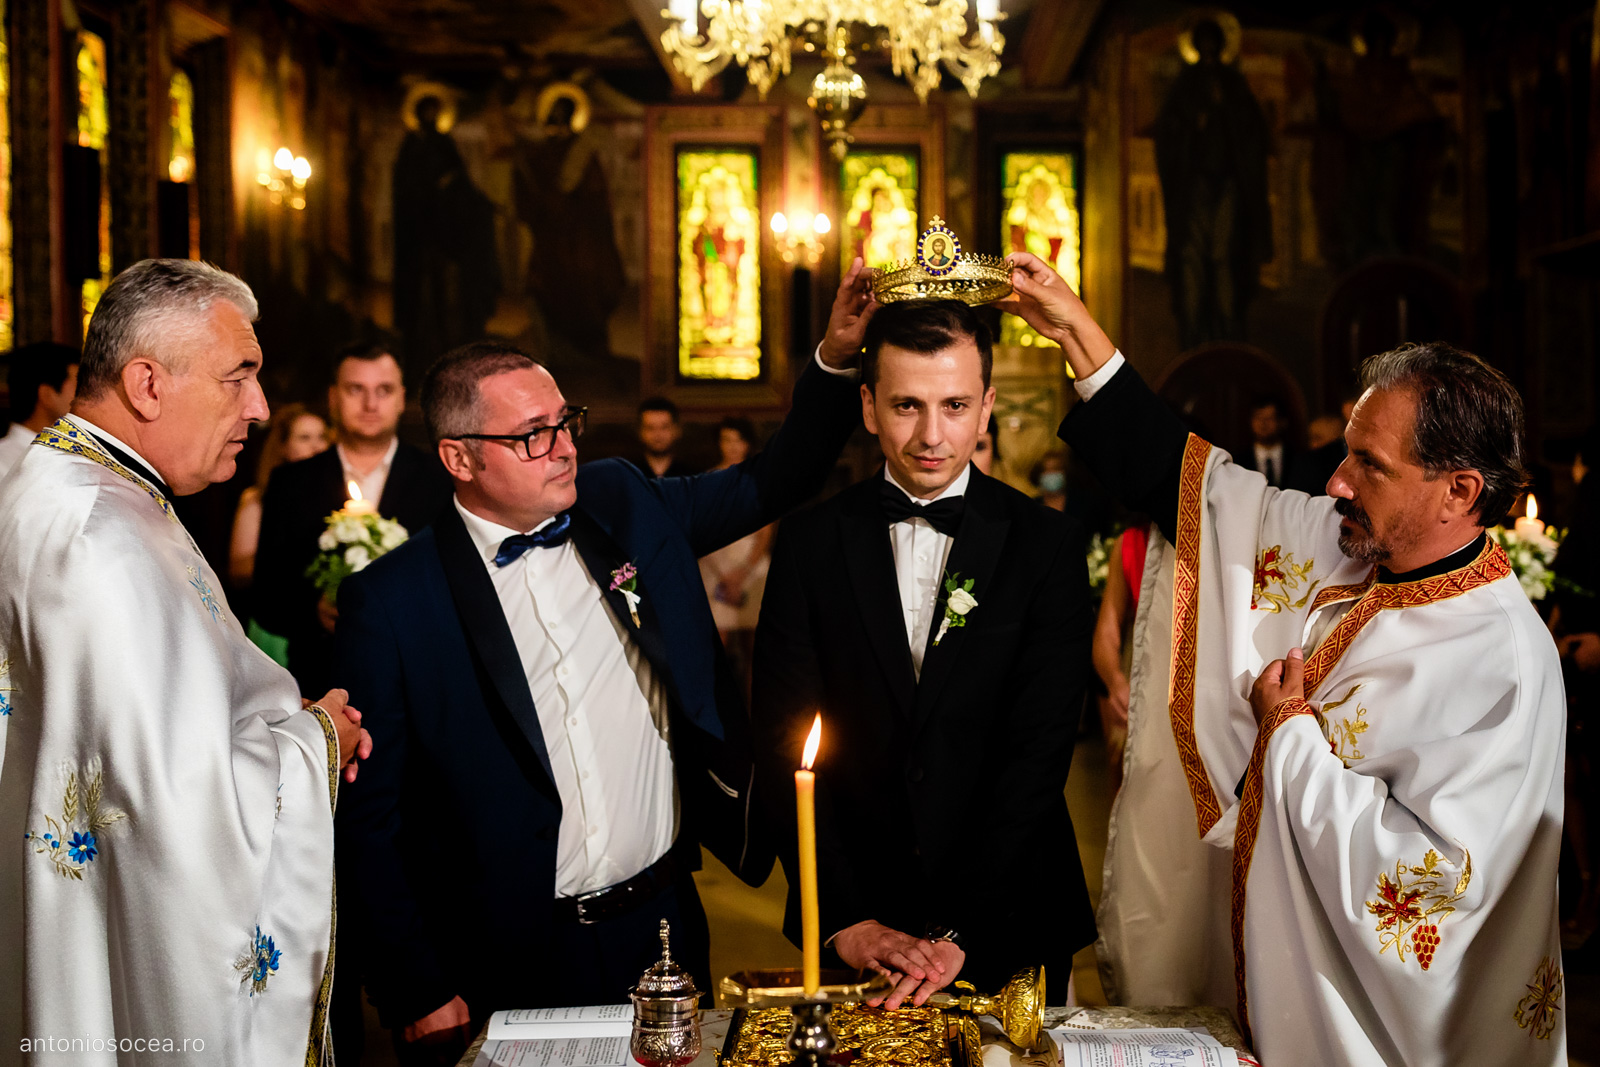 Nunta La Gondola București- Fotograf nunta premium București - Antonio Socea Fotograf nunta - Cununie Religioasa nunta